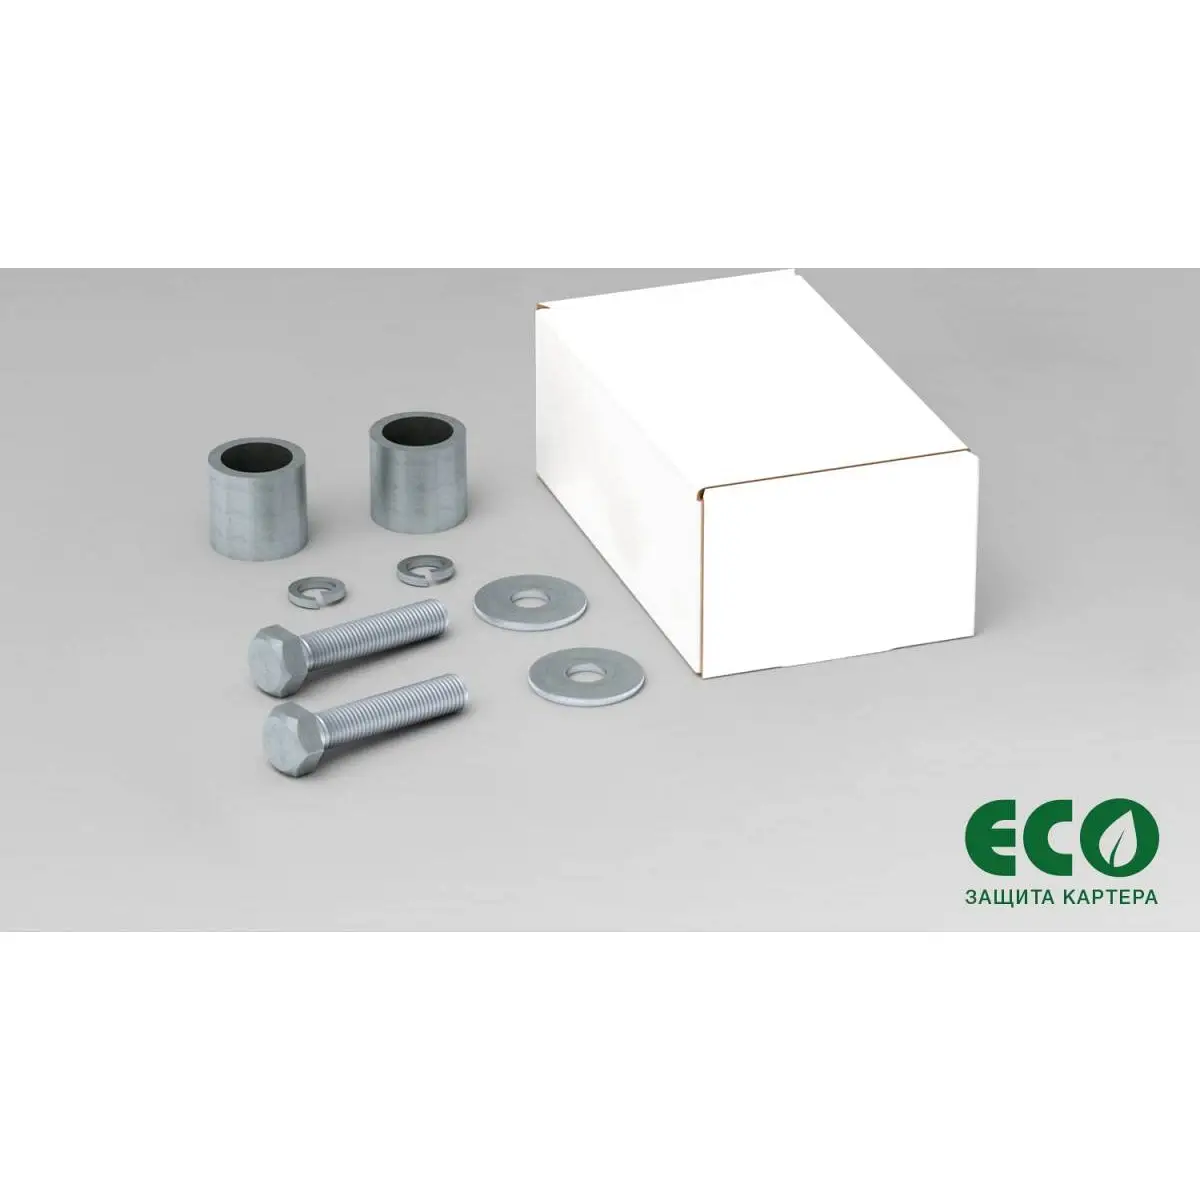 Комплект защиты радиатора и крепежа Eco NO9 HCU 1437099146 6Z4X0V eco9903320 изображение 5